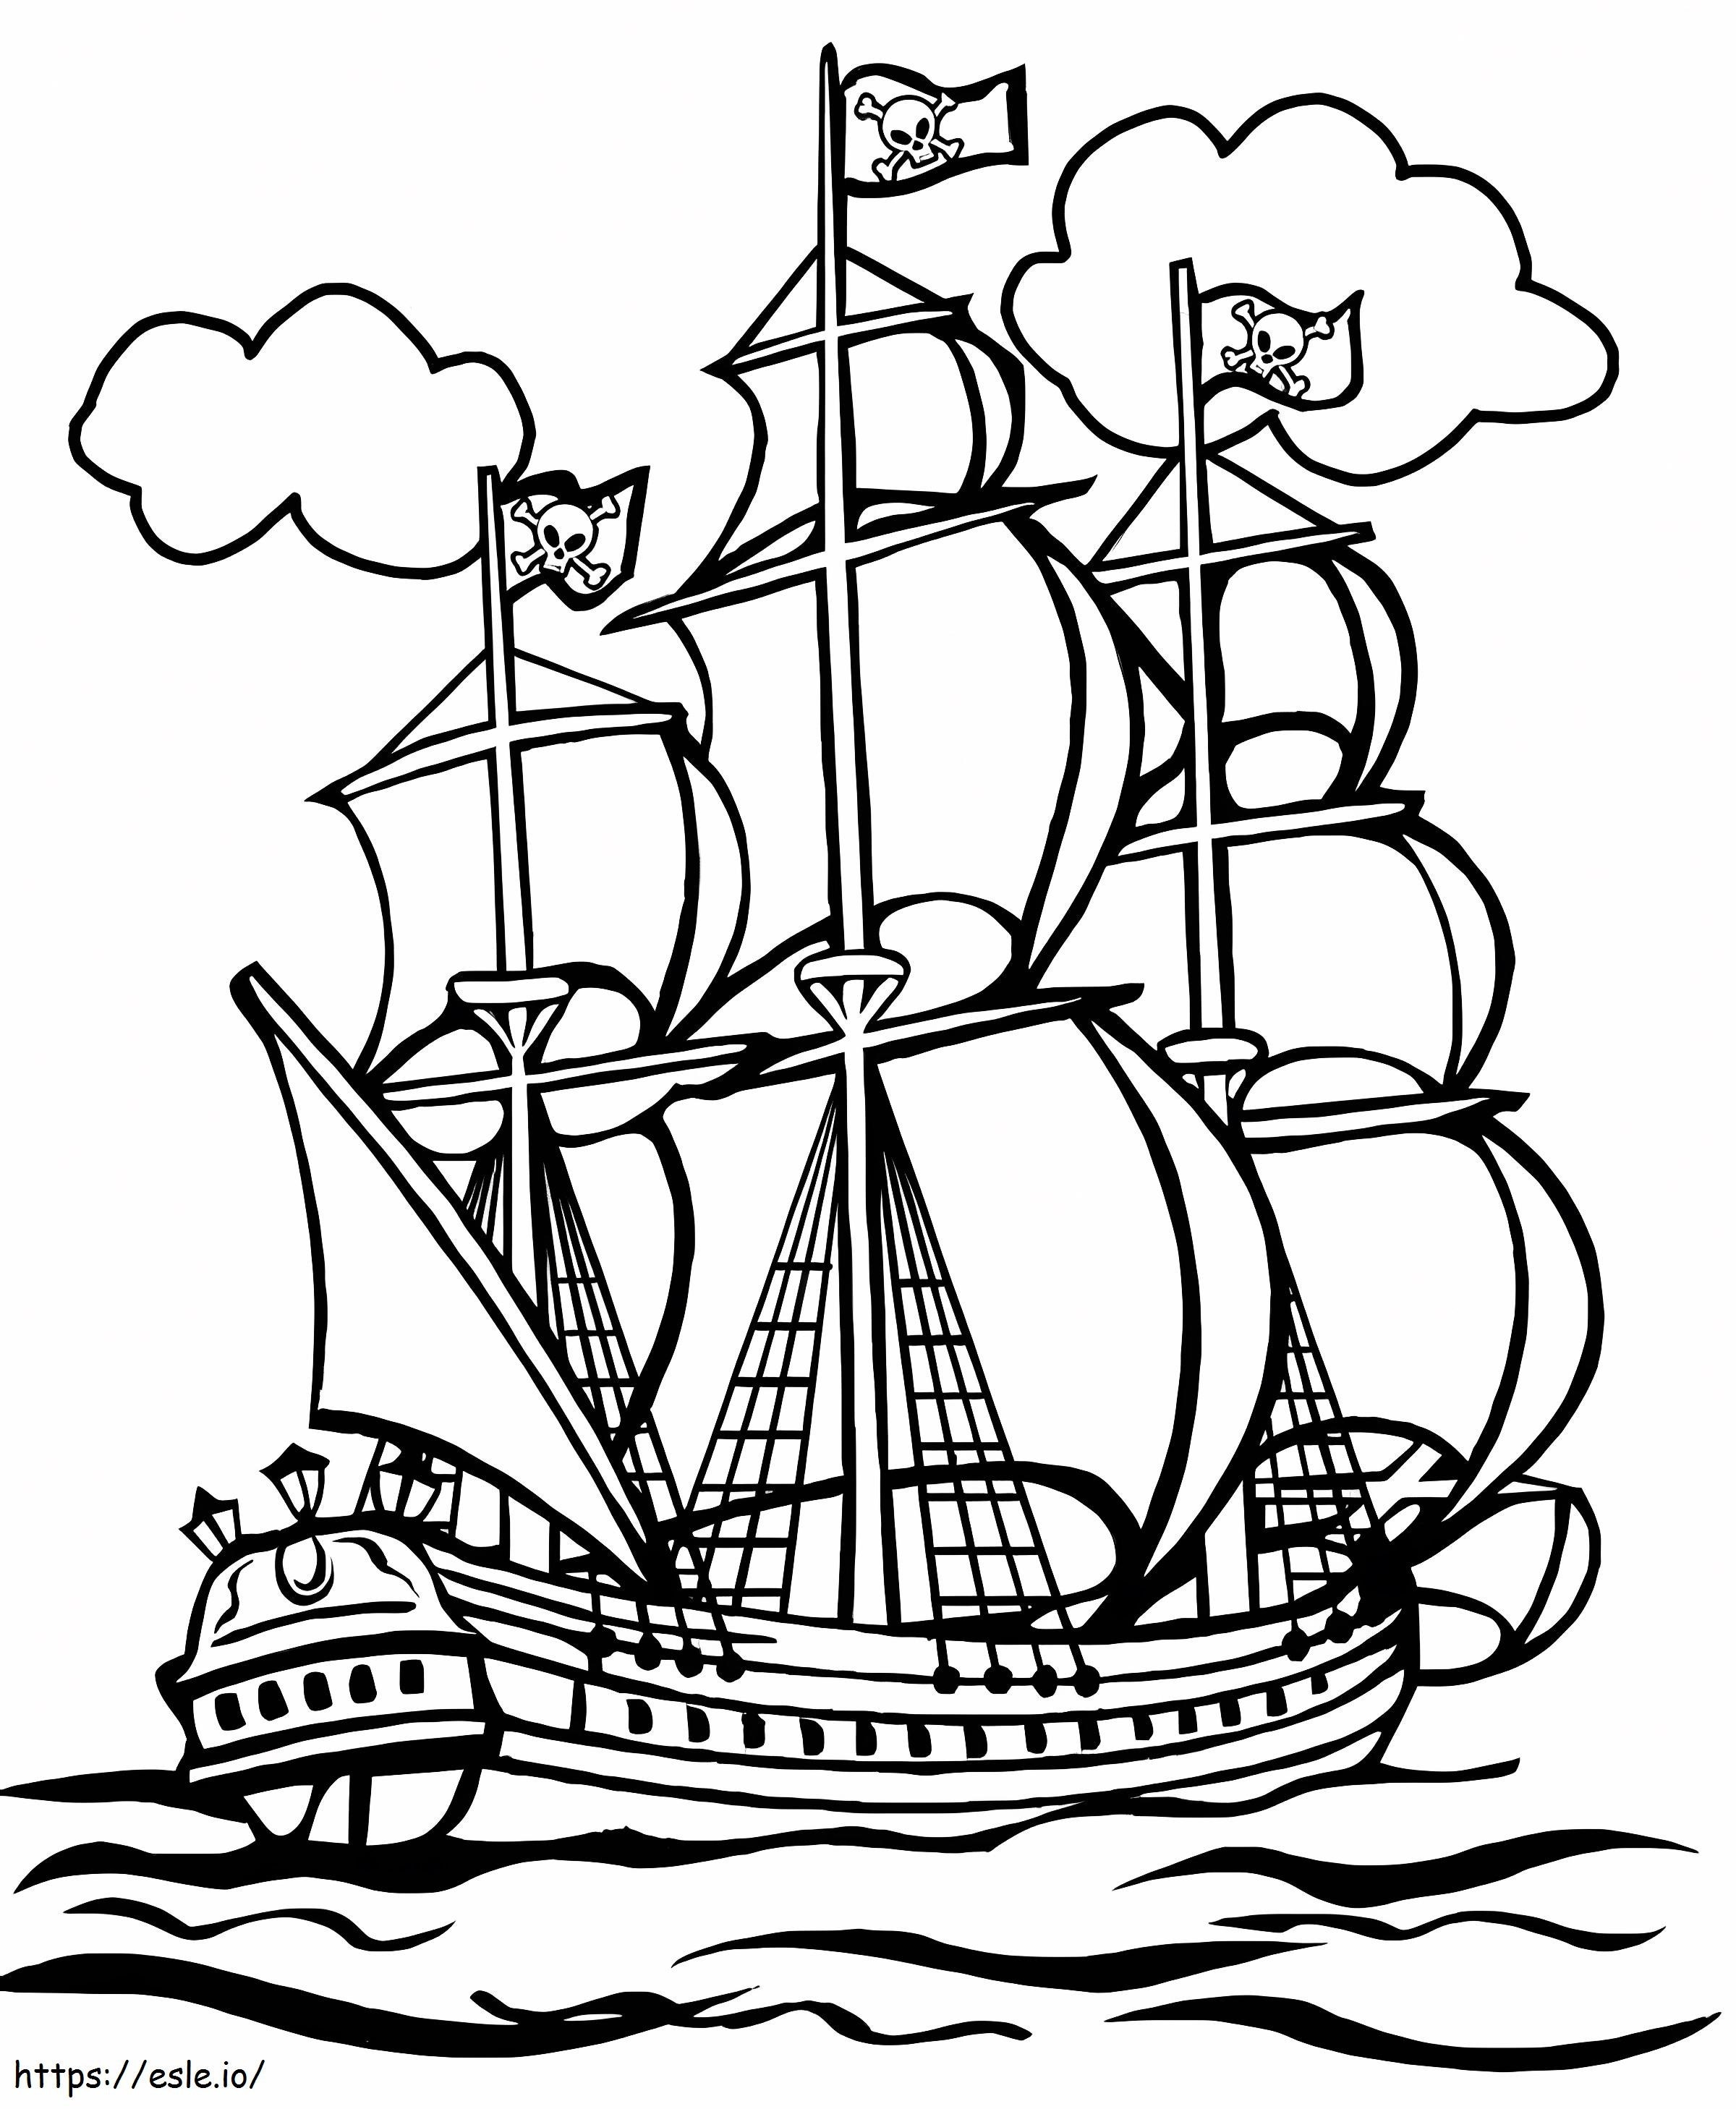 Piratenschip kleurplaat kleurplaat